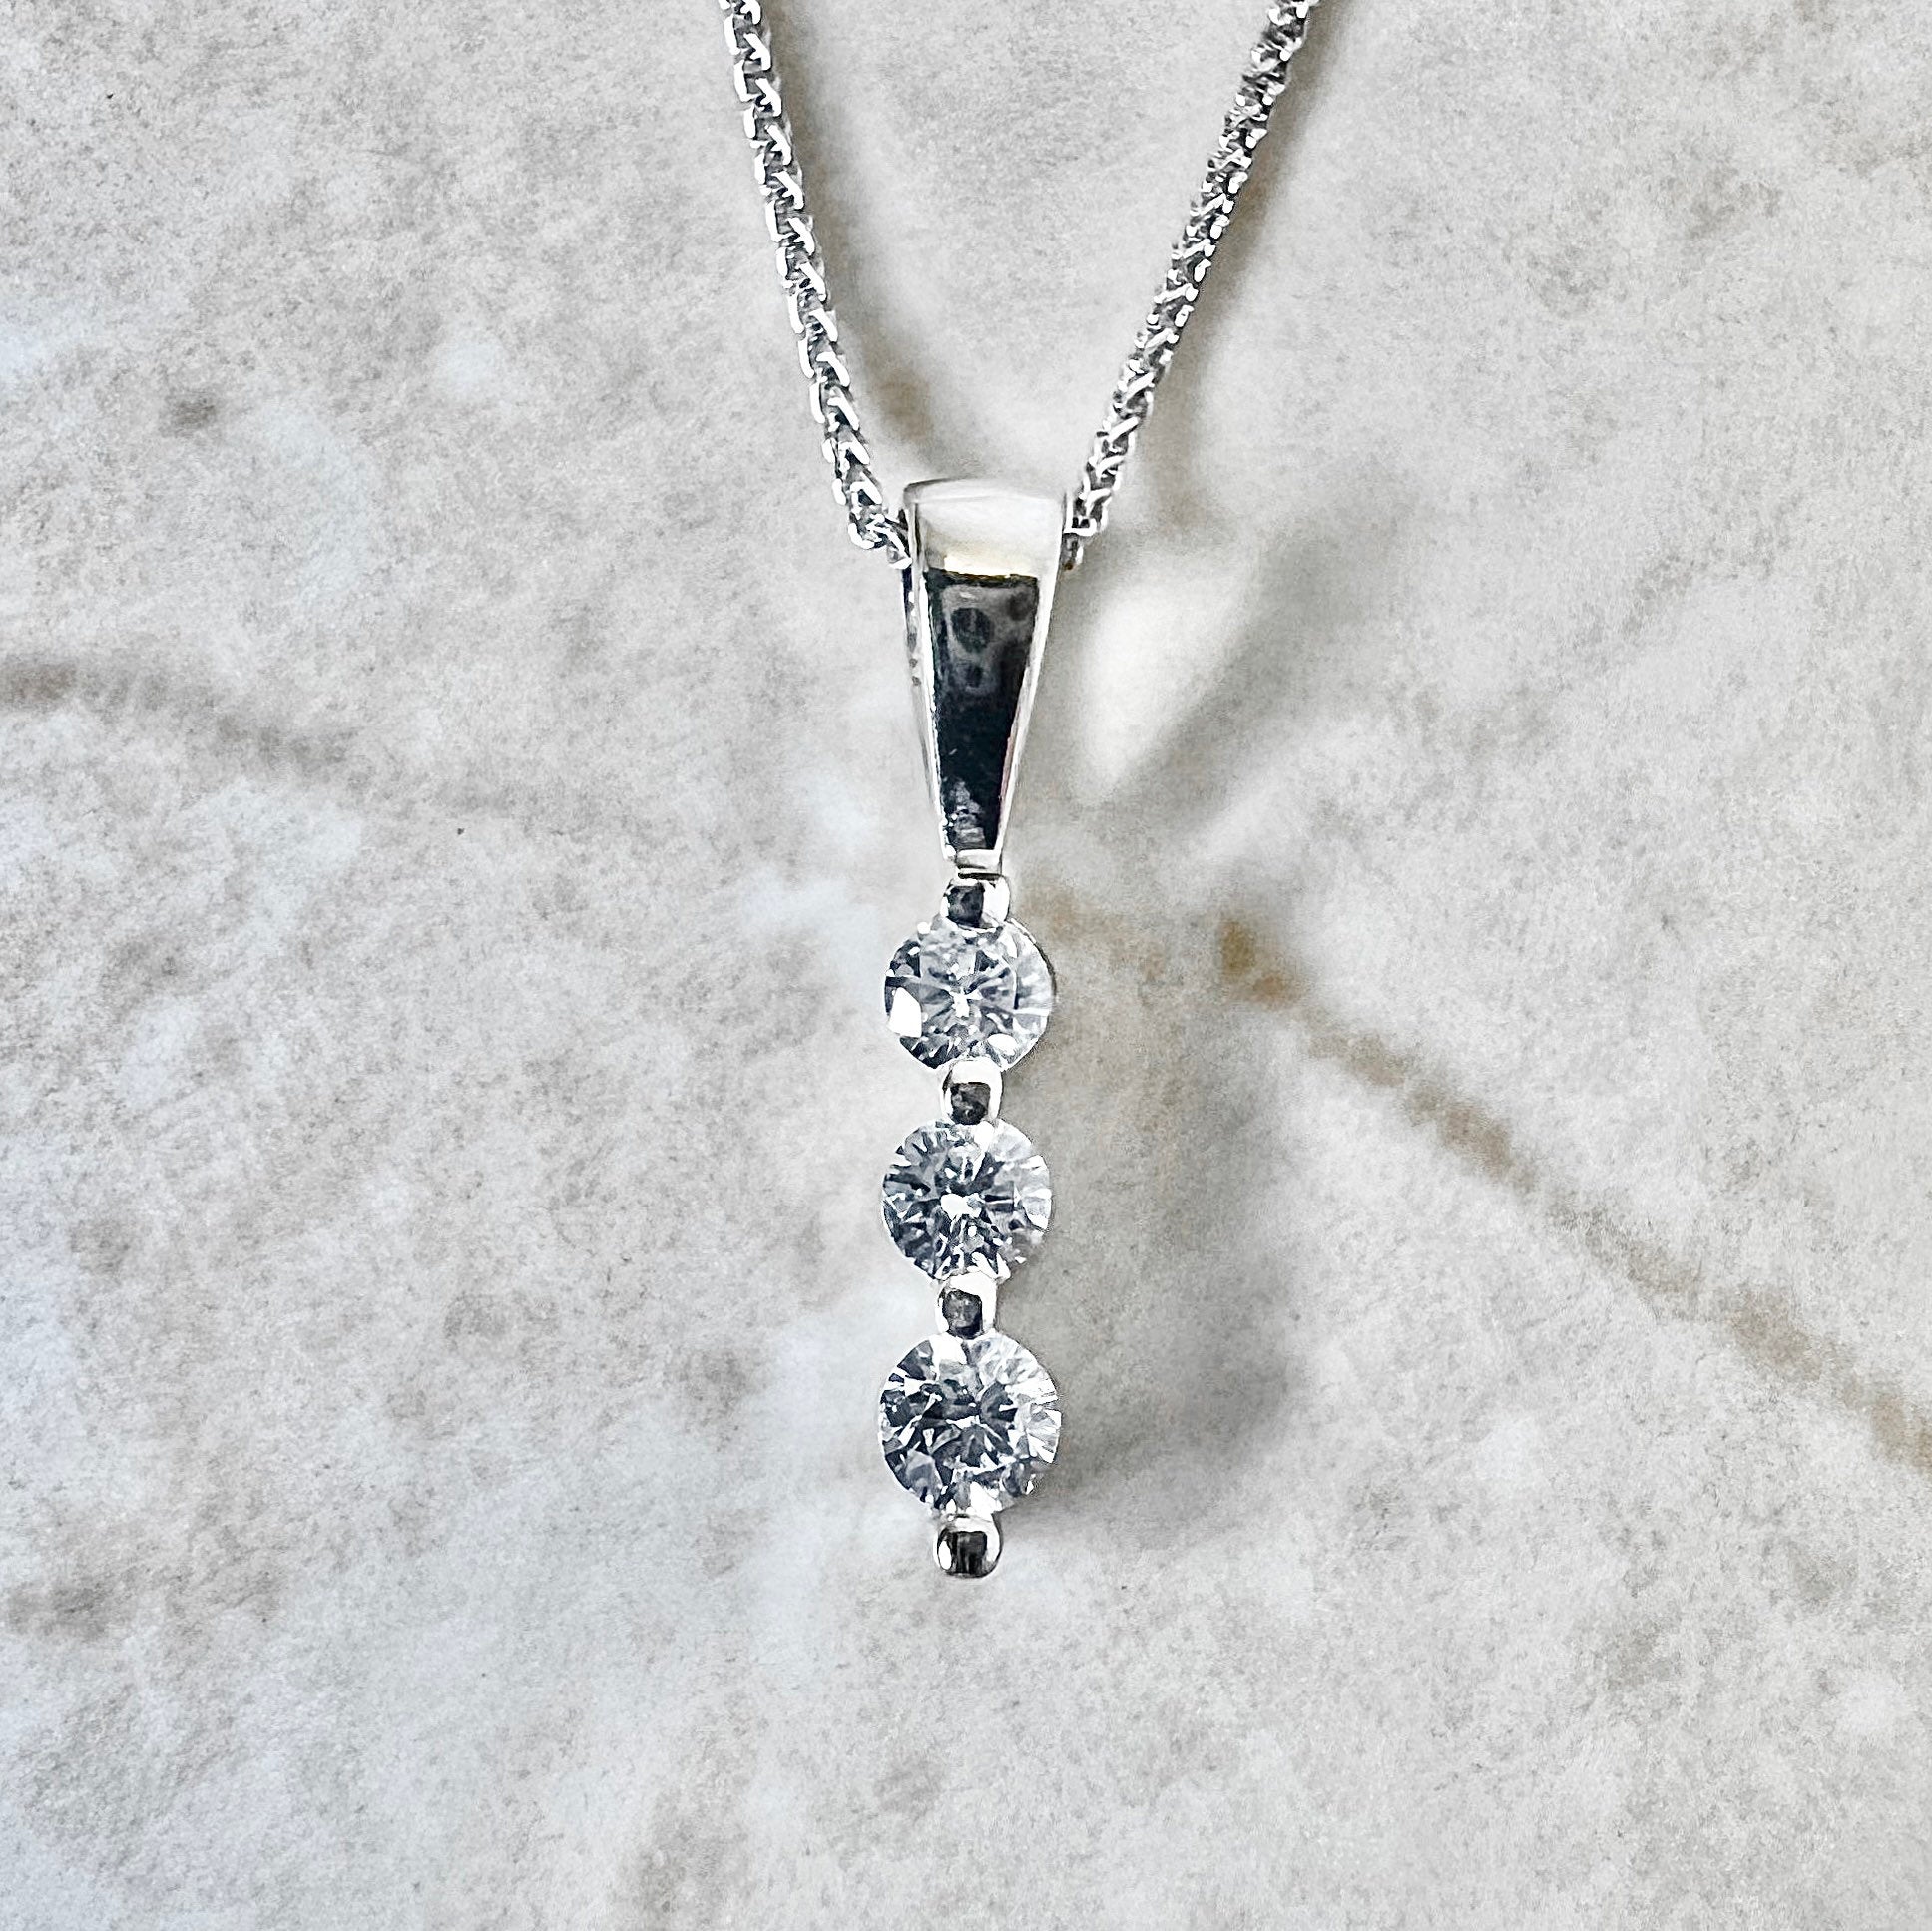 14K White Gold Diamond Pendant Necklace - White Gold Diamond Necklace - 3 Stone White Gold Pendant - Birthday Gift - Best Gift For Her